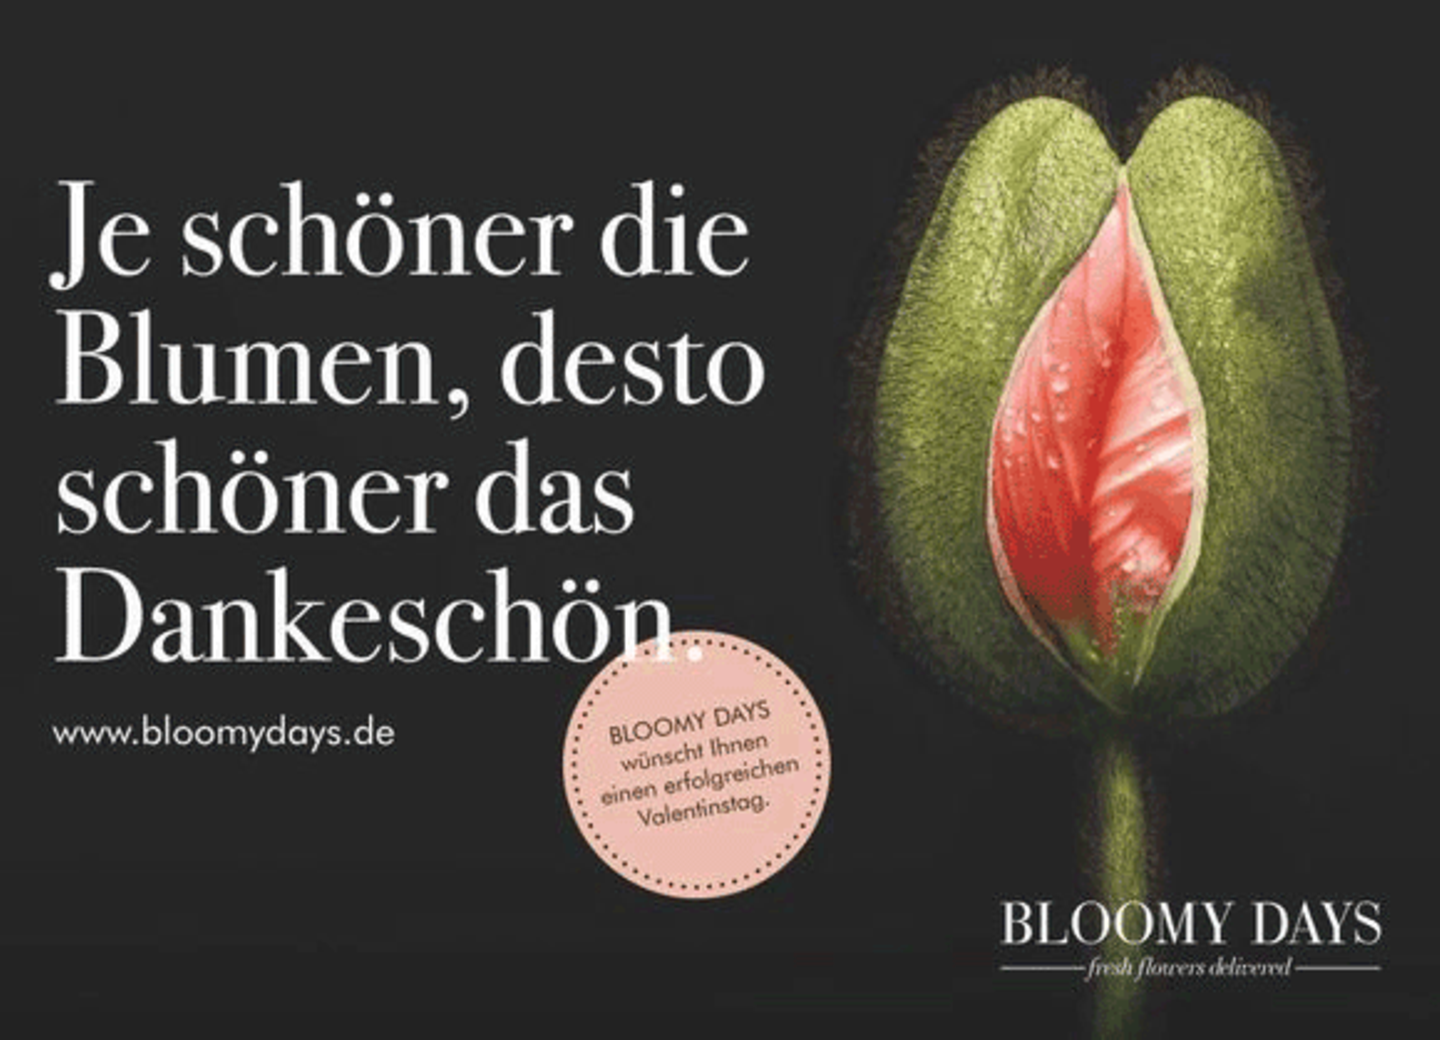 Diese Kampagne meint: Wer Blumen schenkt, kriegt Sex!